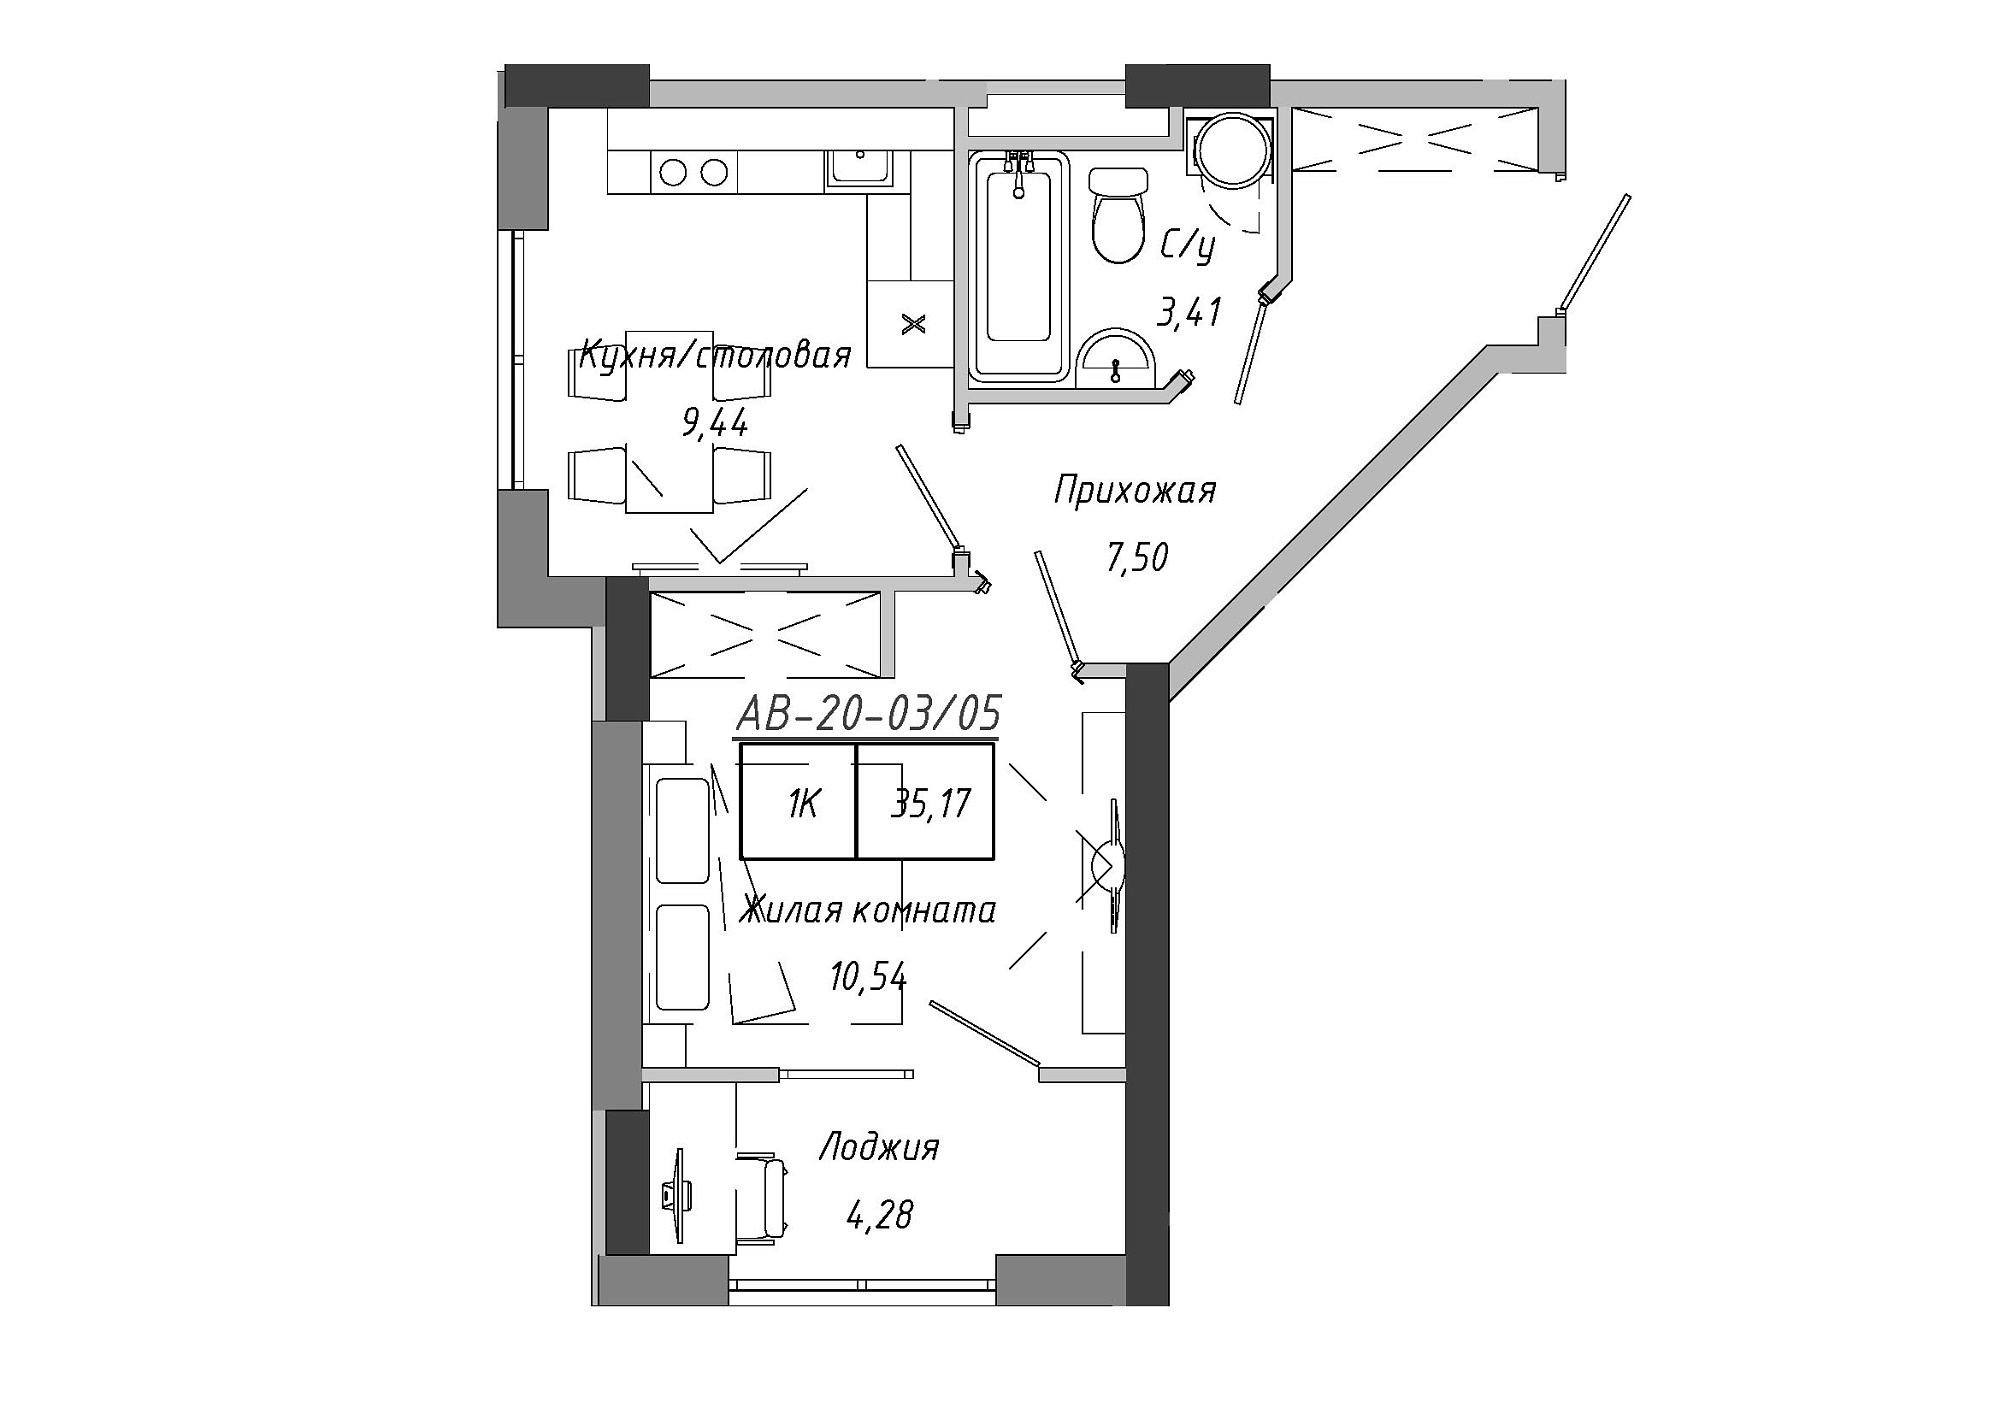 Планування 1-к квартира площею 35.17м2, AB-20-03/00005.